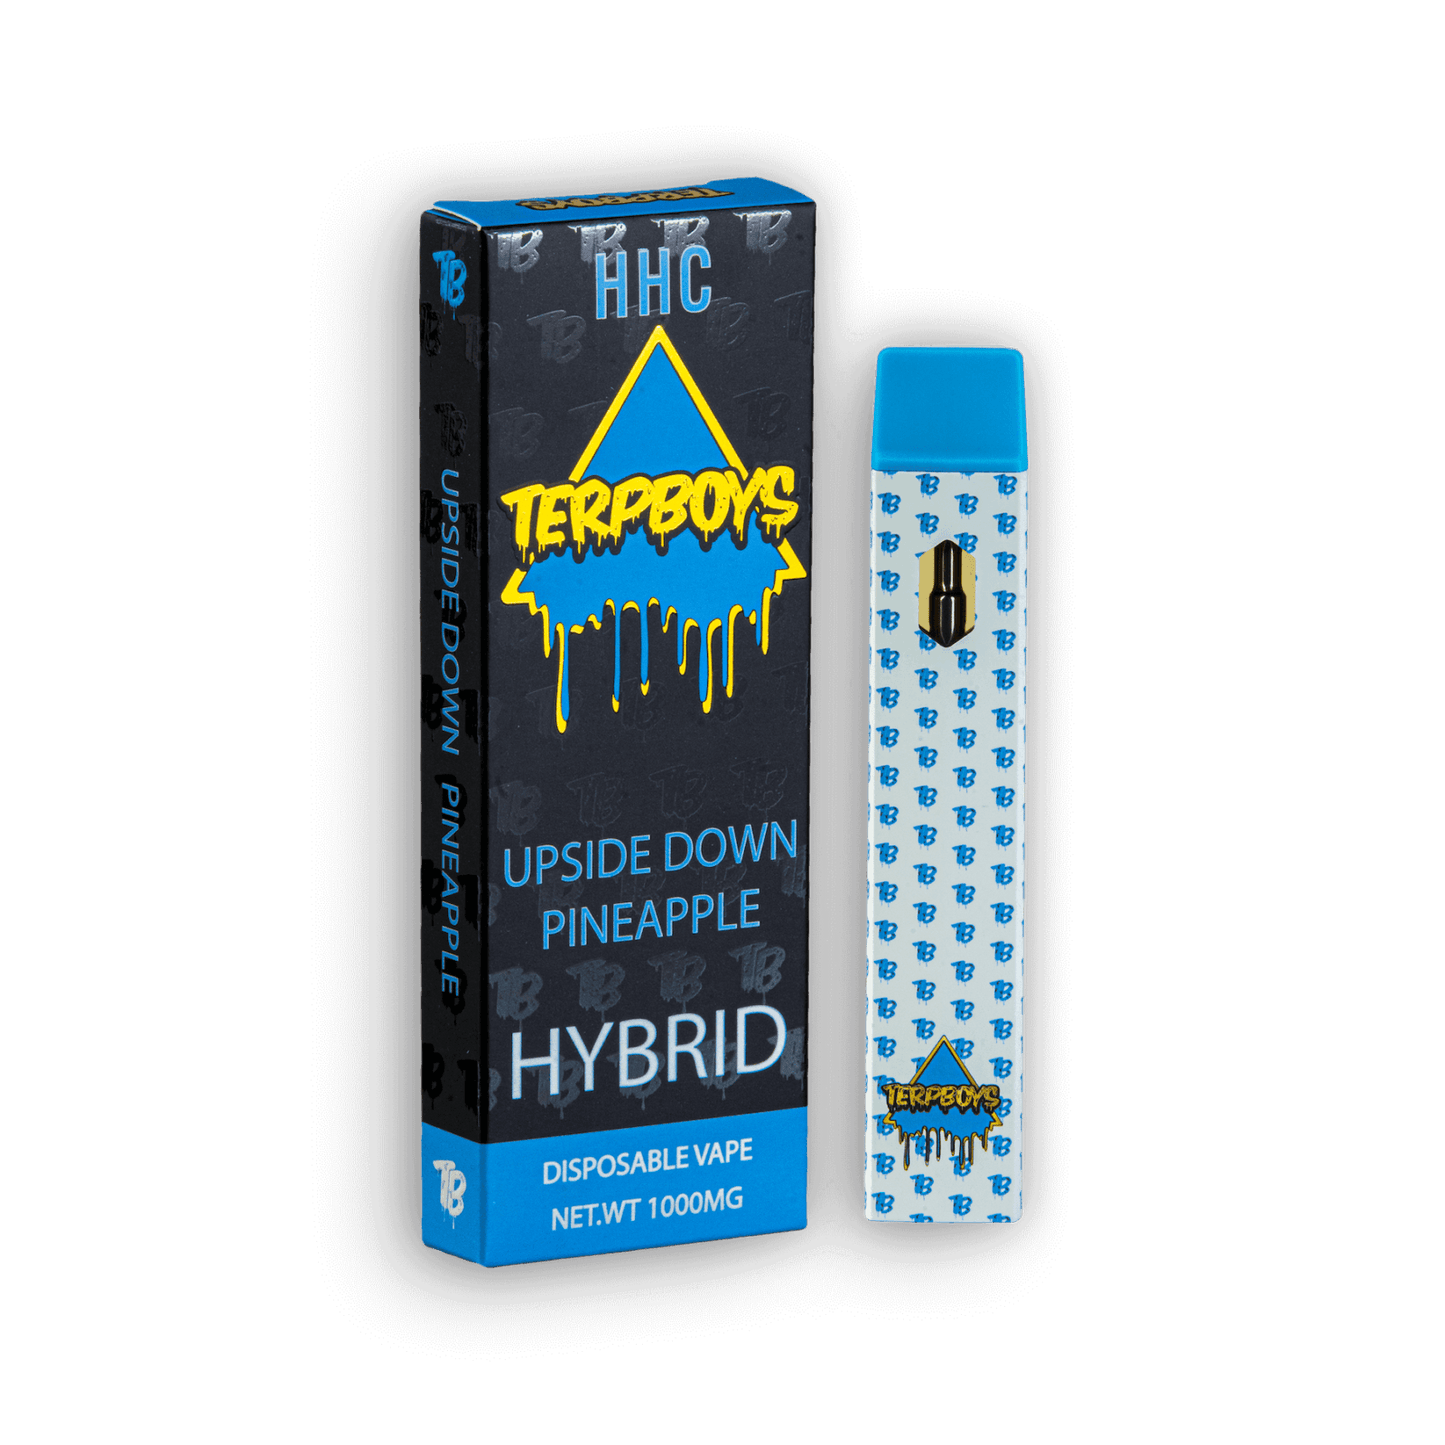 HHC Hybrid Disposable Vape